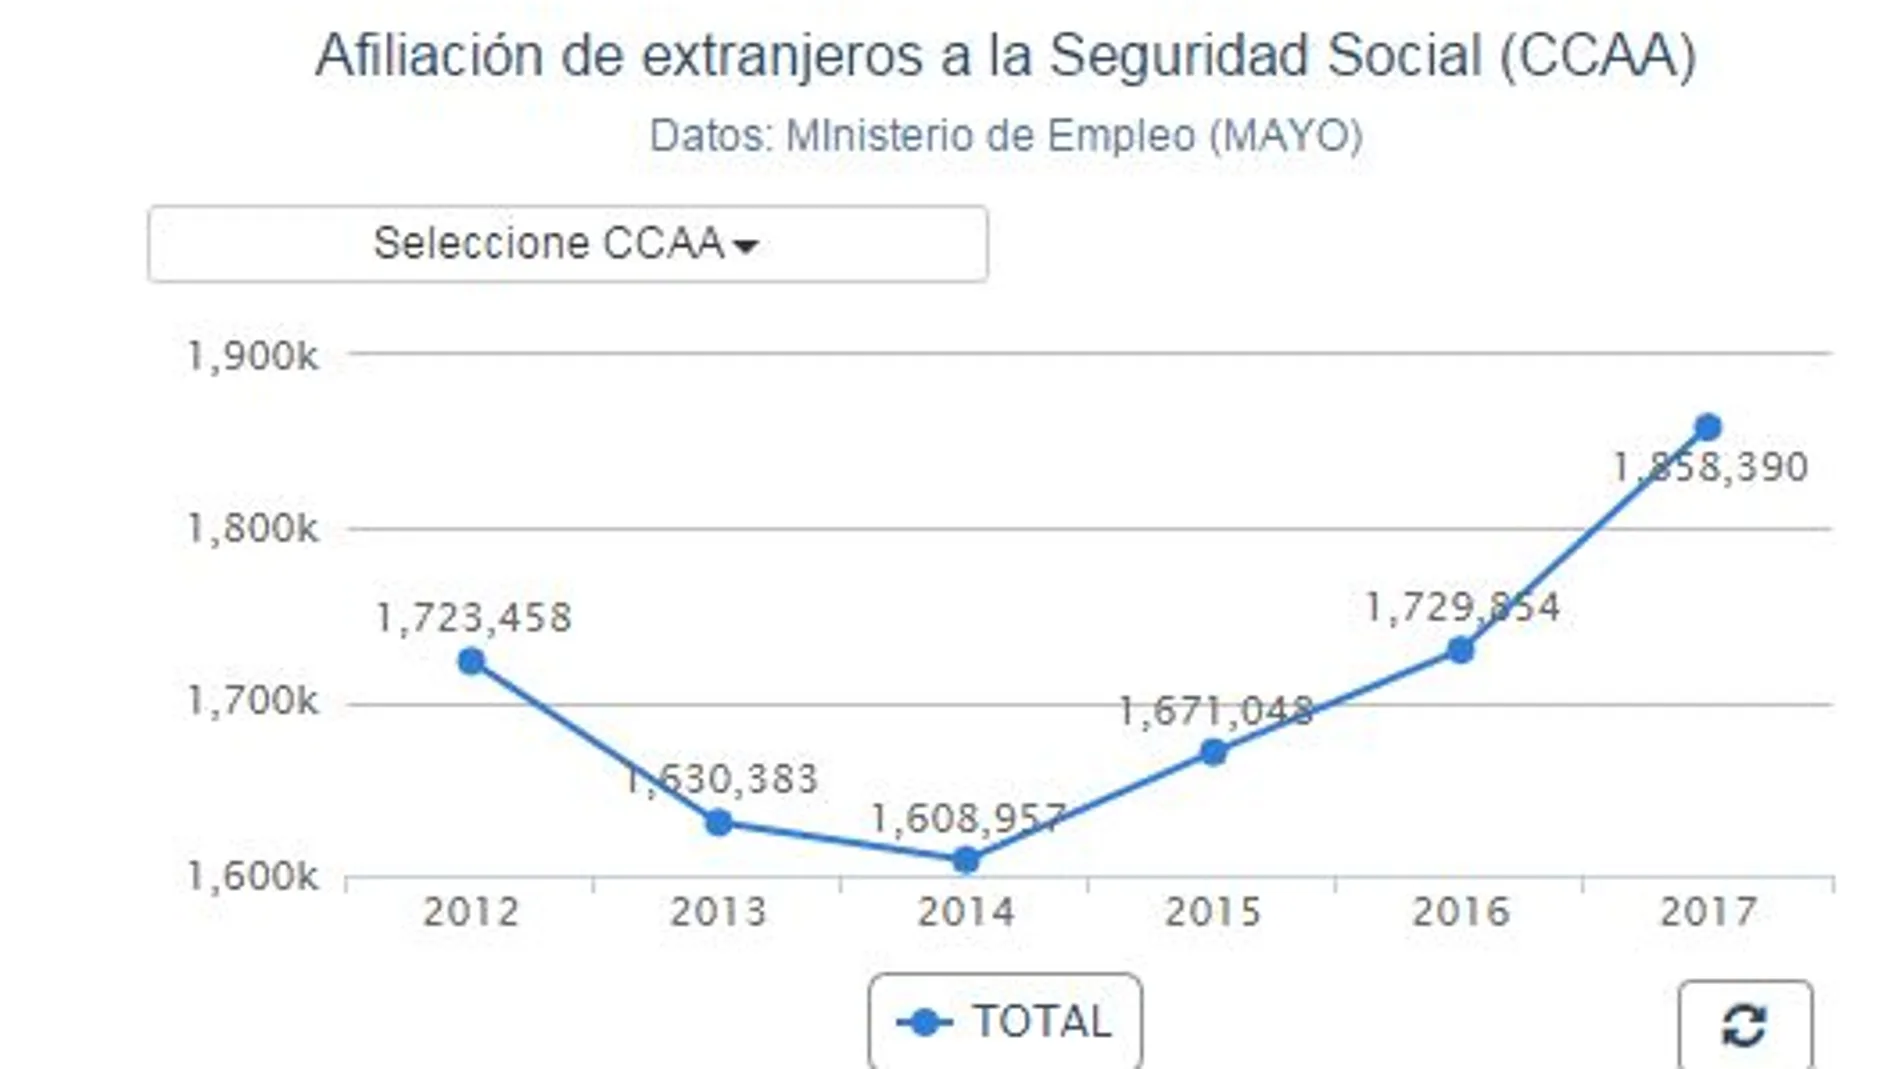 La Seguridad Social gana 63.719 afiliados extranjeros en su mejor mayo desde 2005